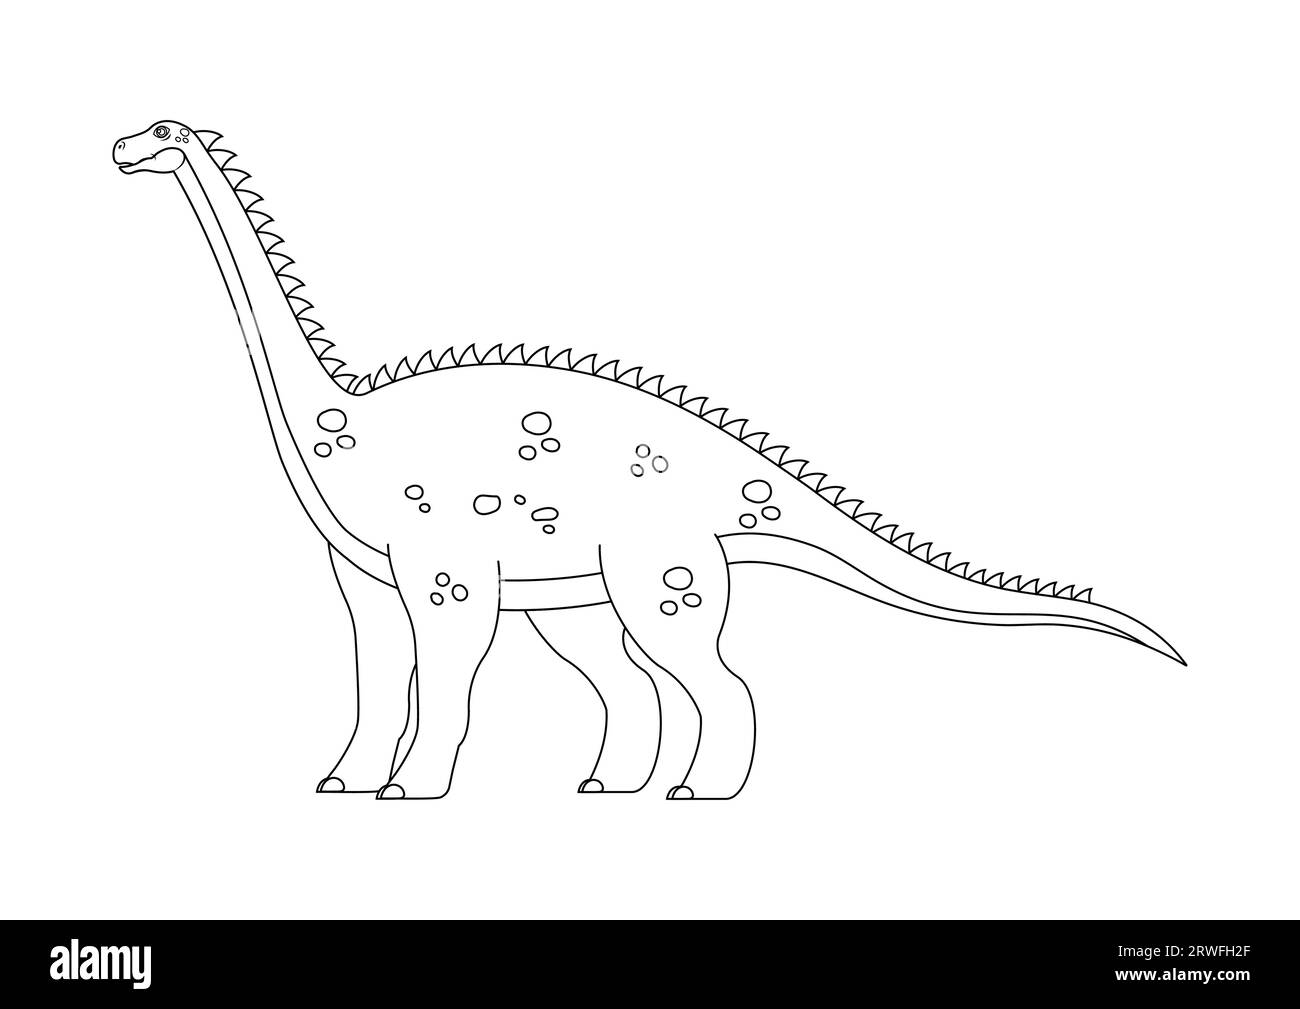 Schwarz-weiß Diplodocus Dinosaurier Zeichentrickfigur Vektor. Malseite eines Diplodocus-Dinosauriers Stock Vektor